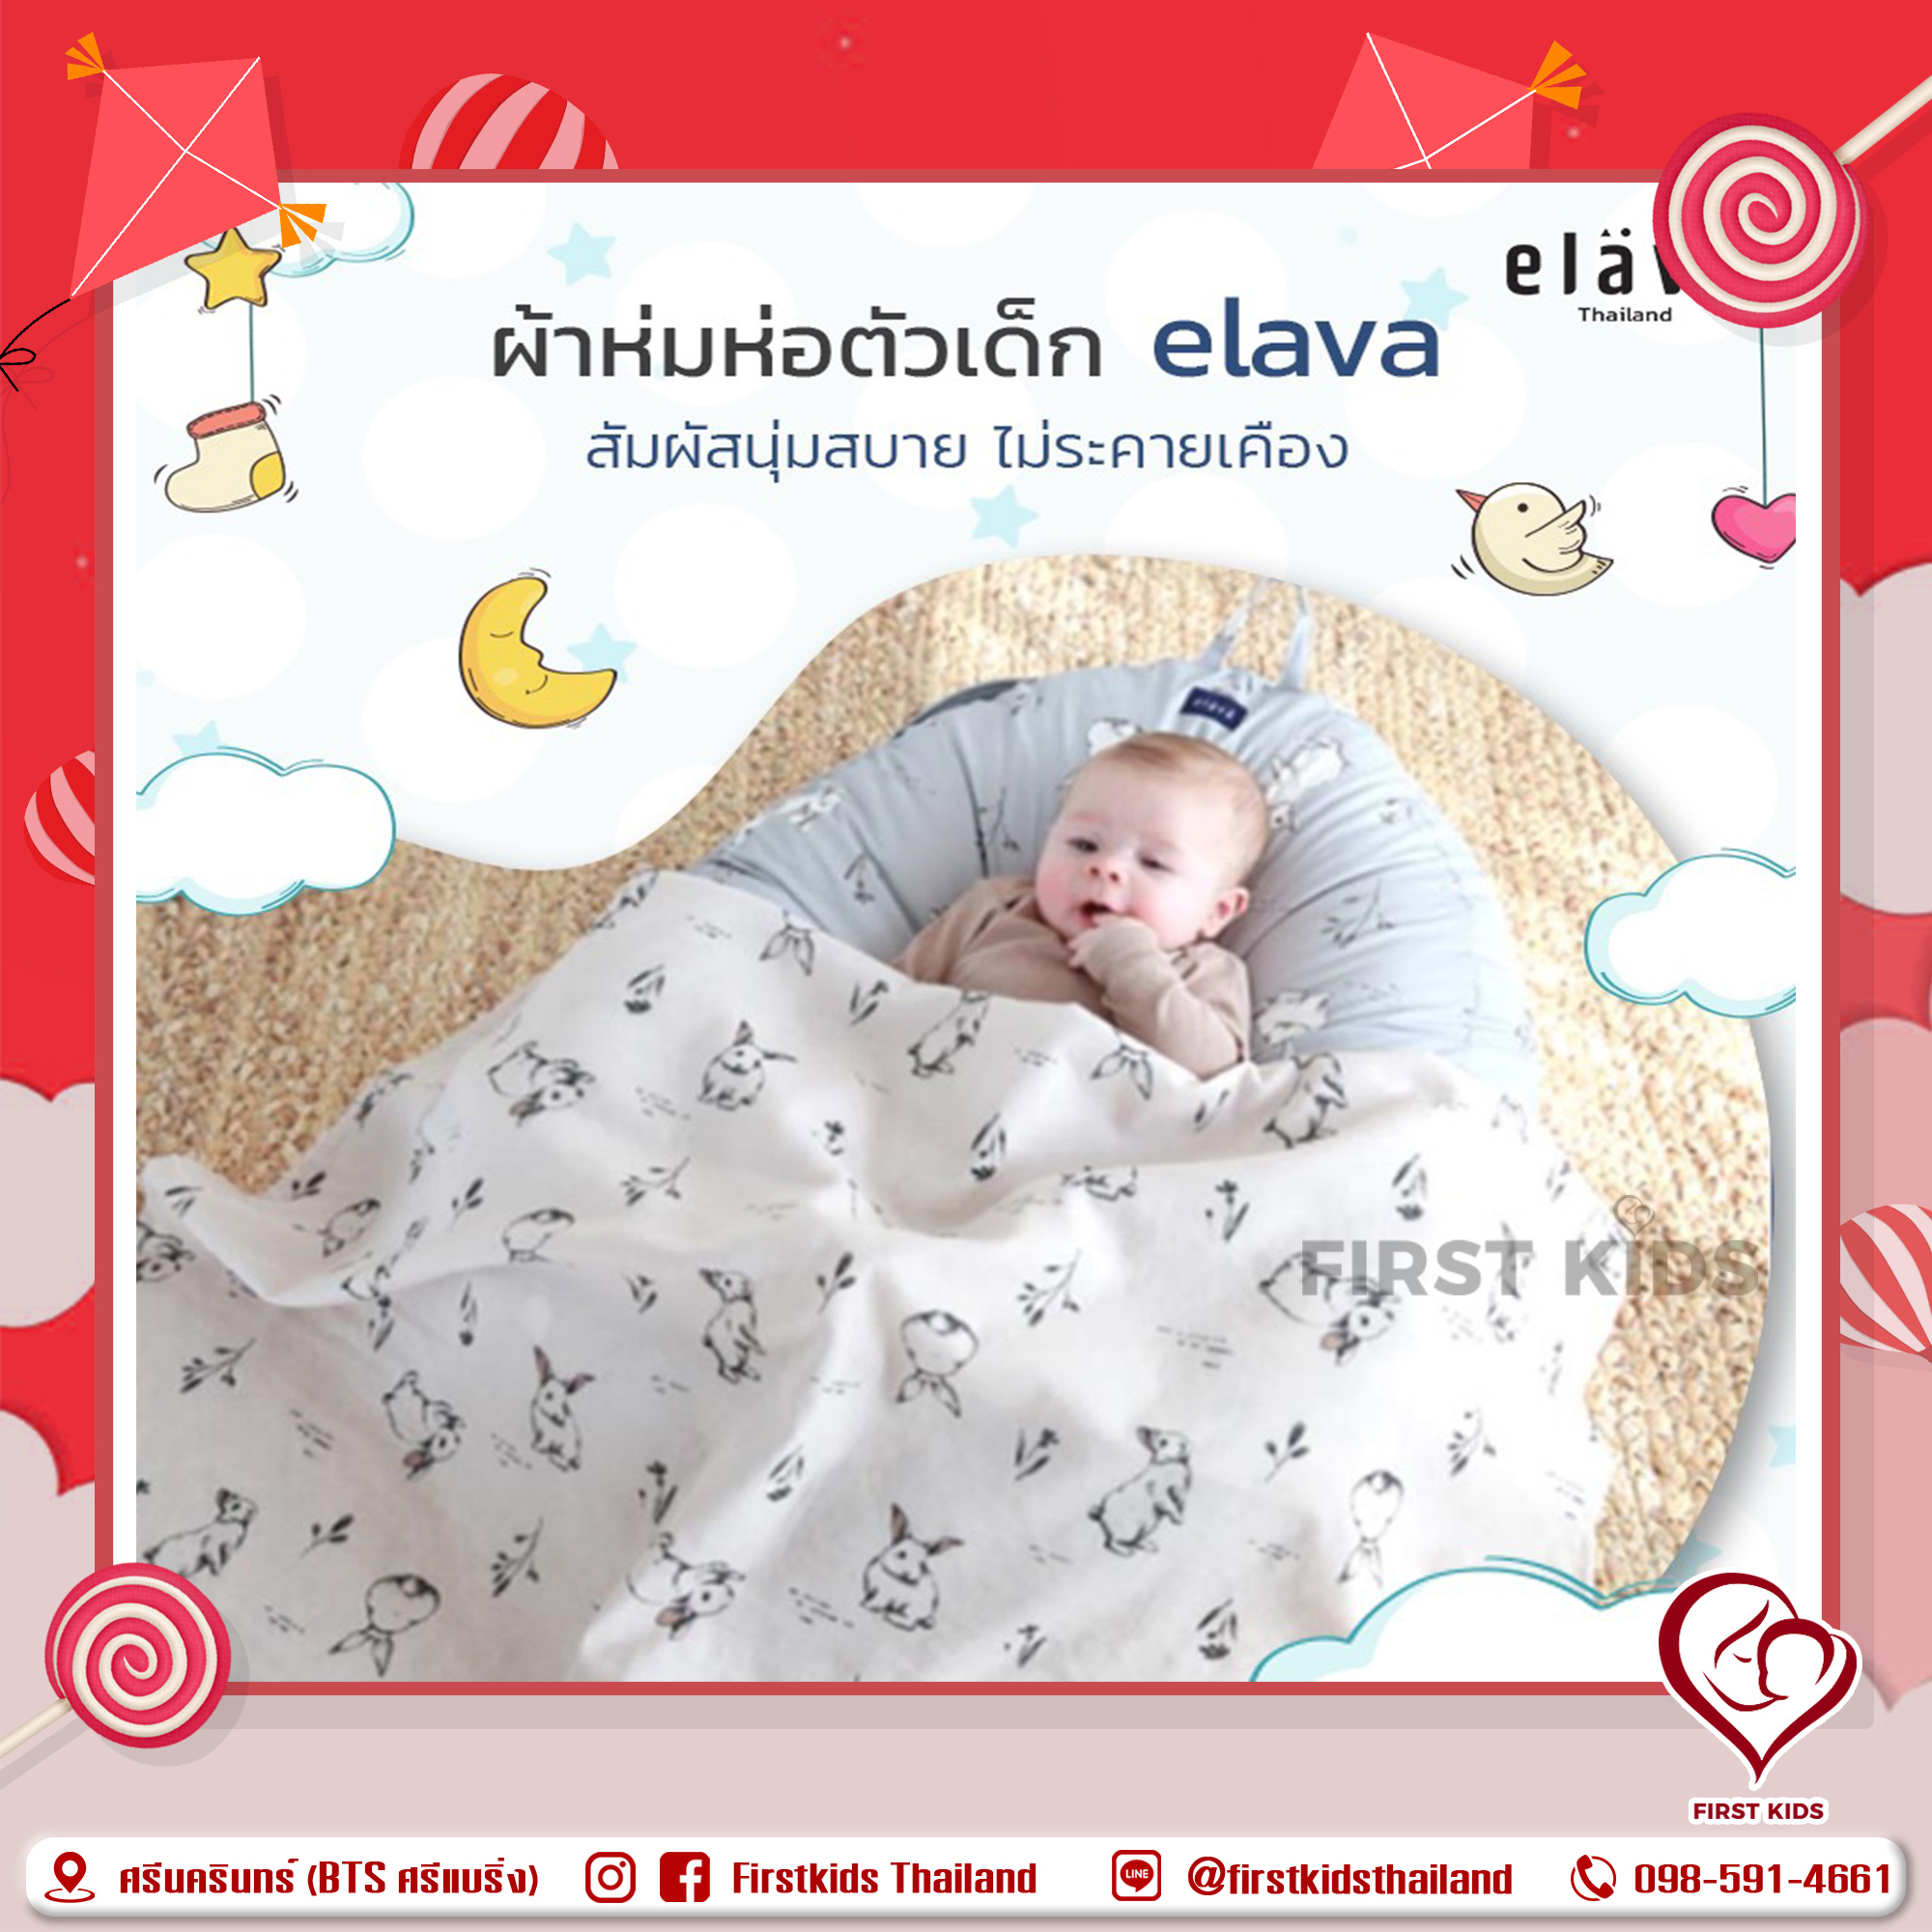 Elava ผ้าห่มห่อตัวเด็ก อีกหนึ่งไอเทมสำหรับเบบี๋ #firstkidsthailand